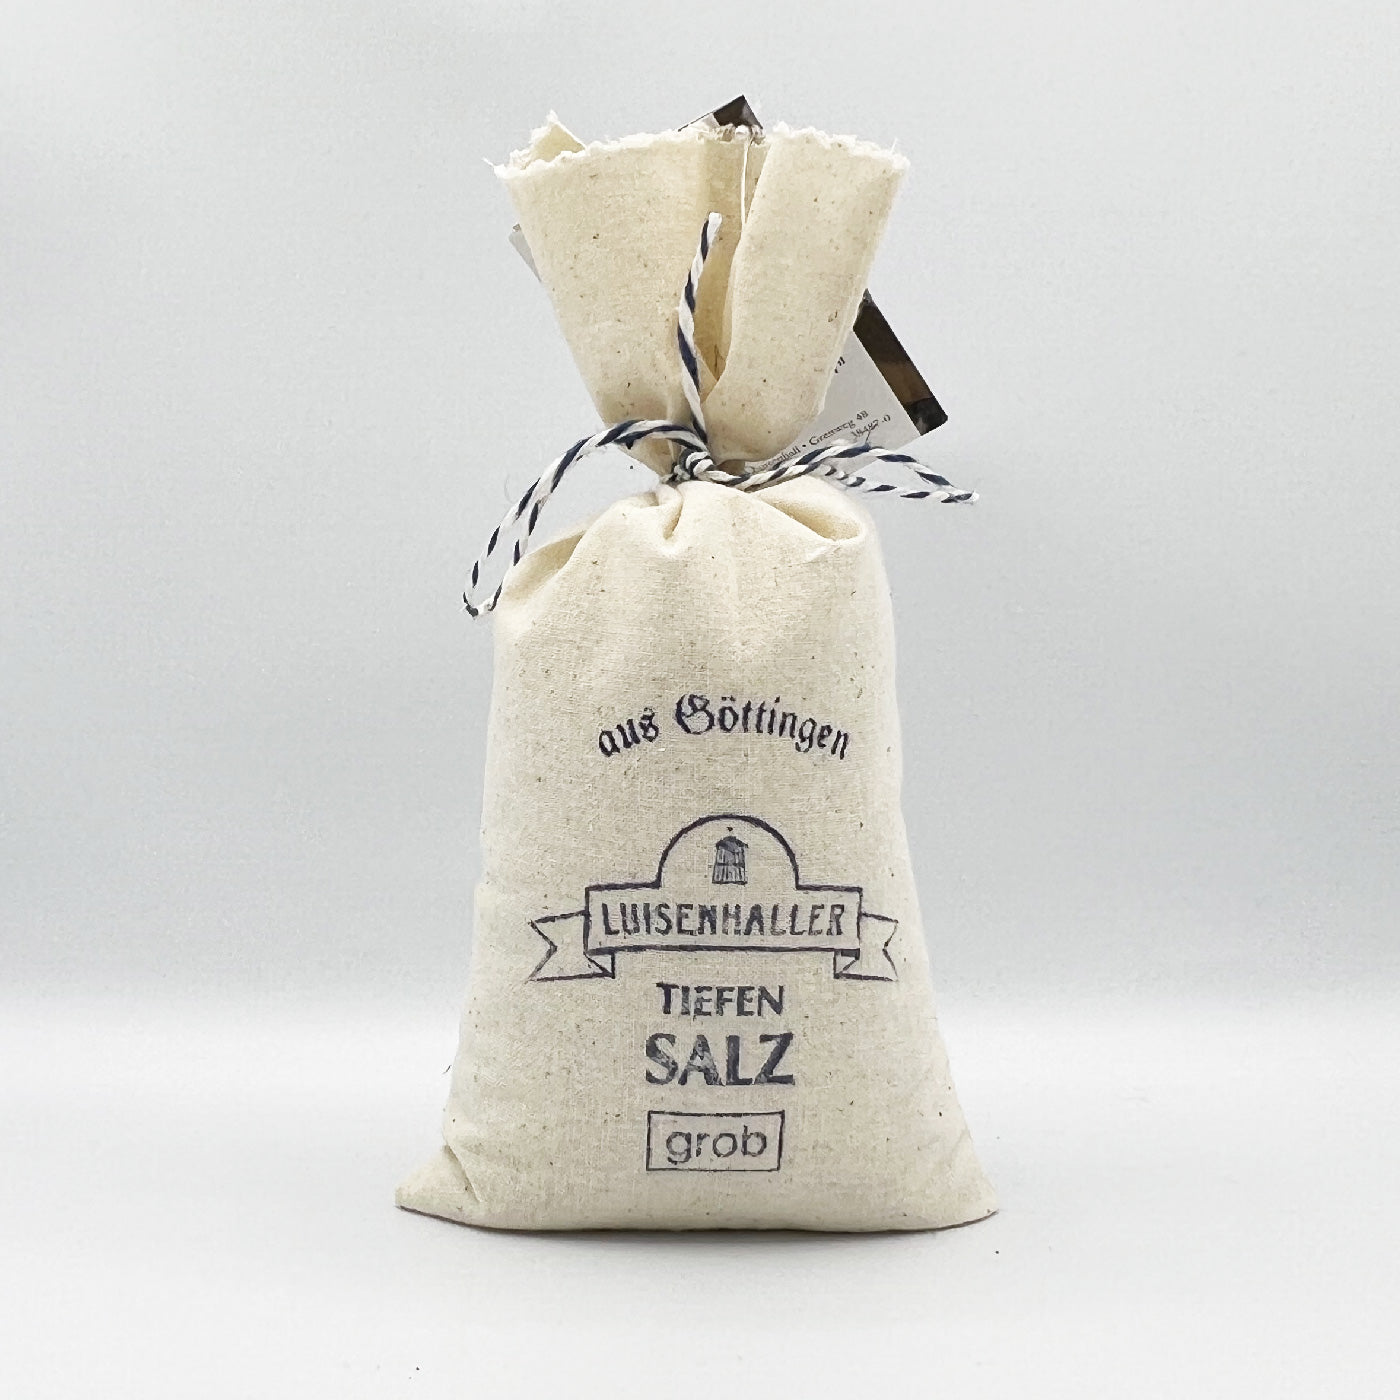 Luisenhaller Salz (grob) 300g im Geschenksäckchen